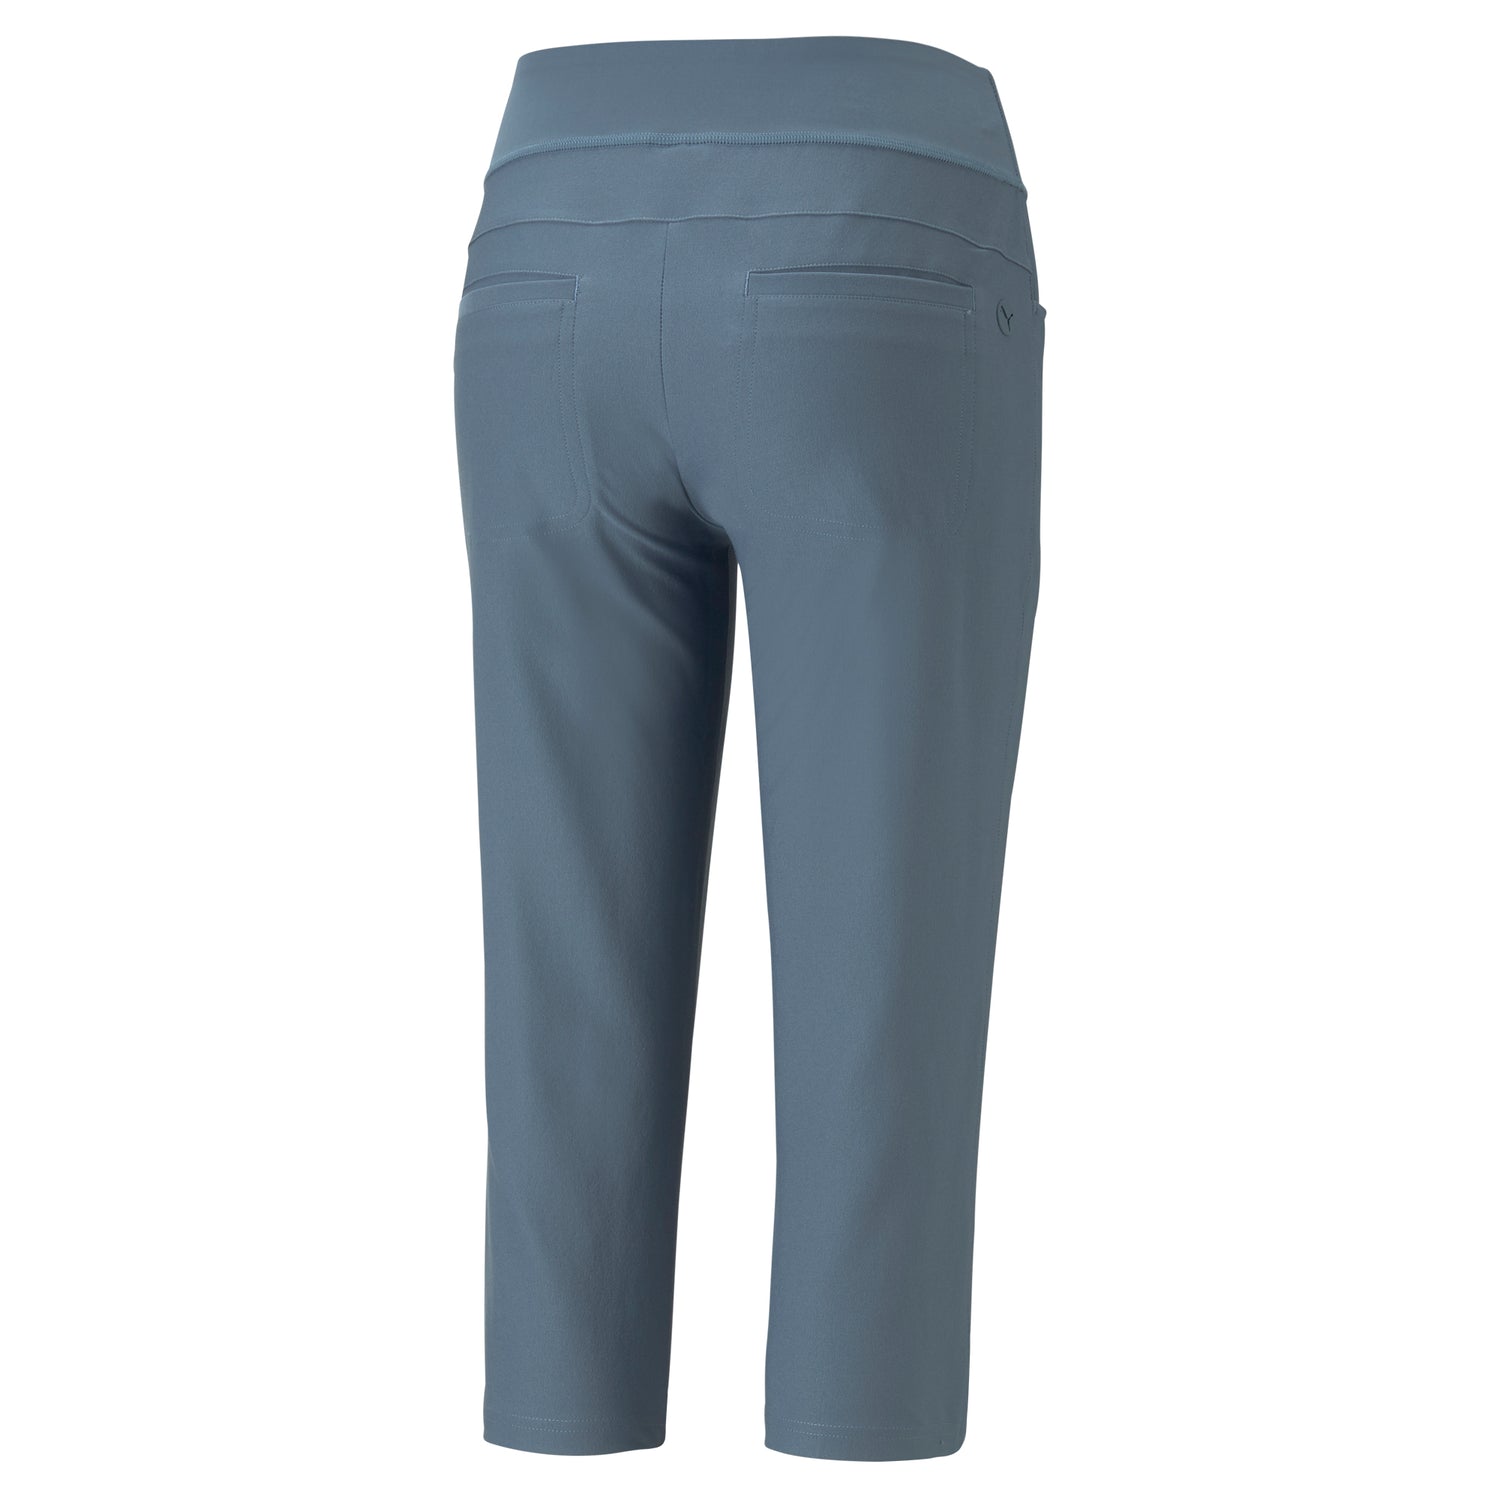 Cotton Capris For Women - Half Pants Pack Of 2 (sky Blue & Black